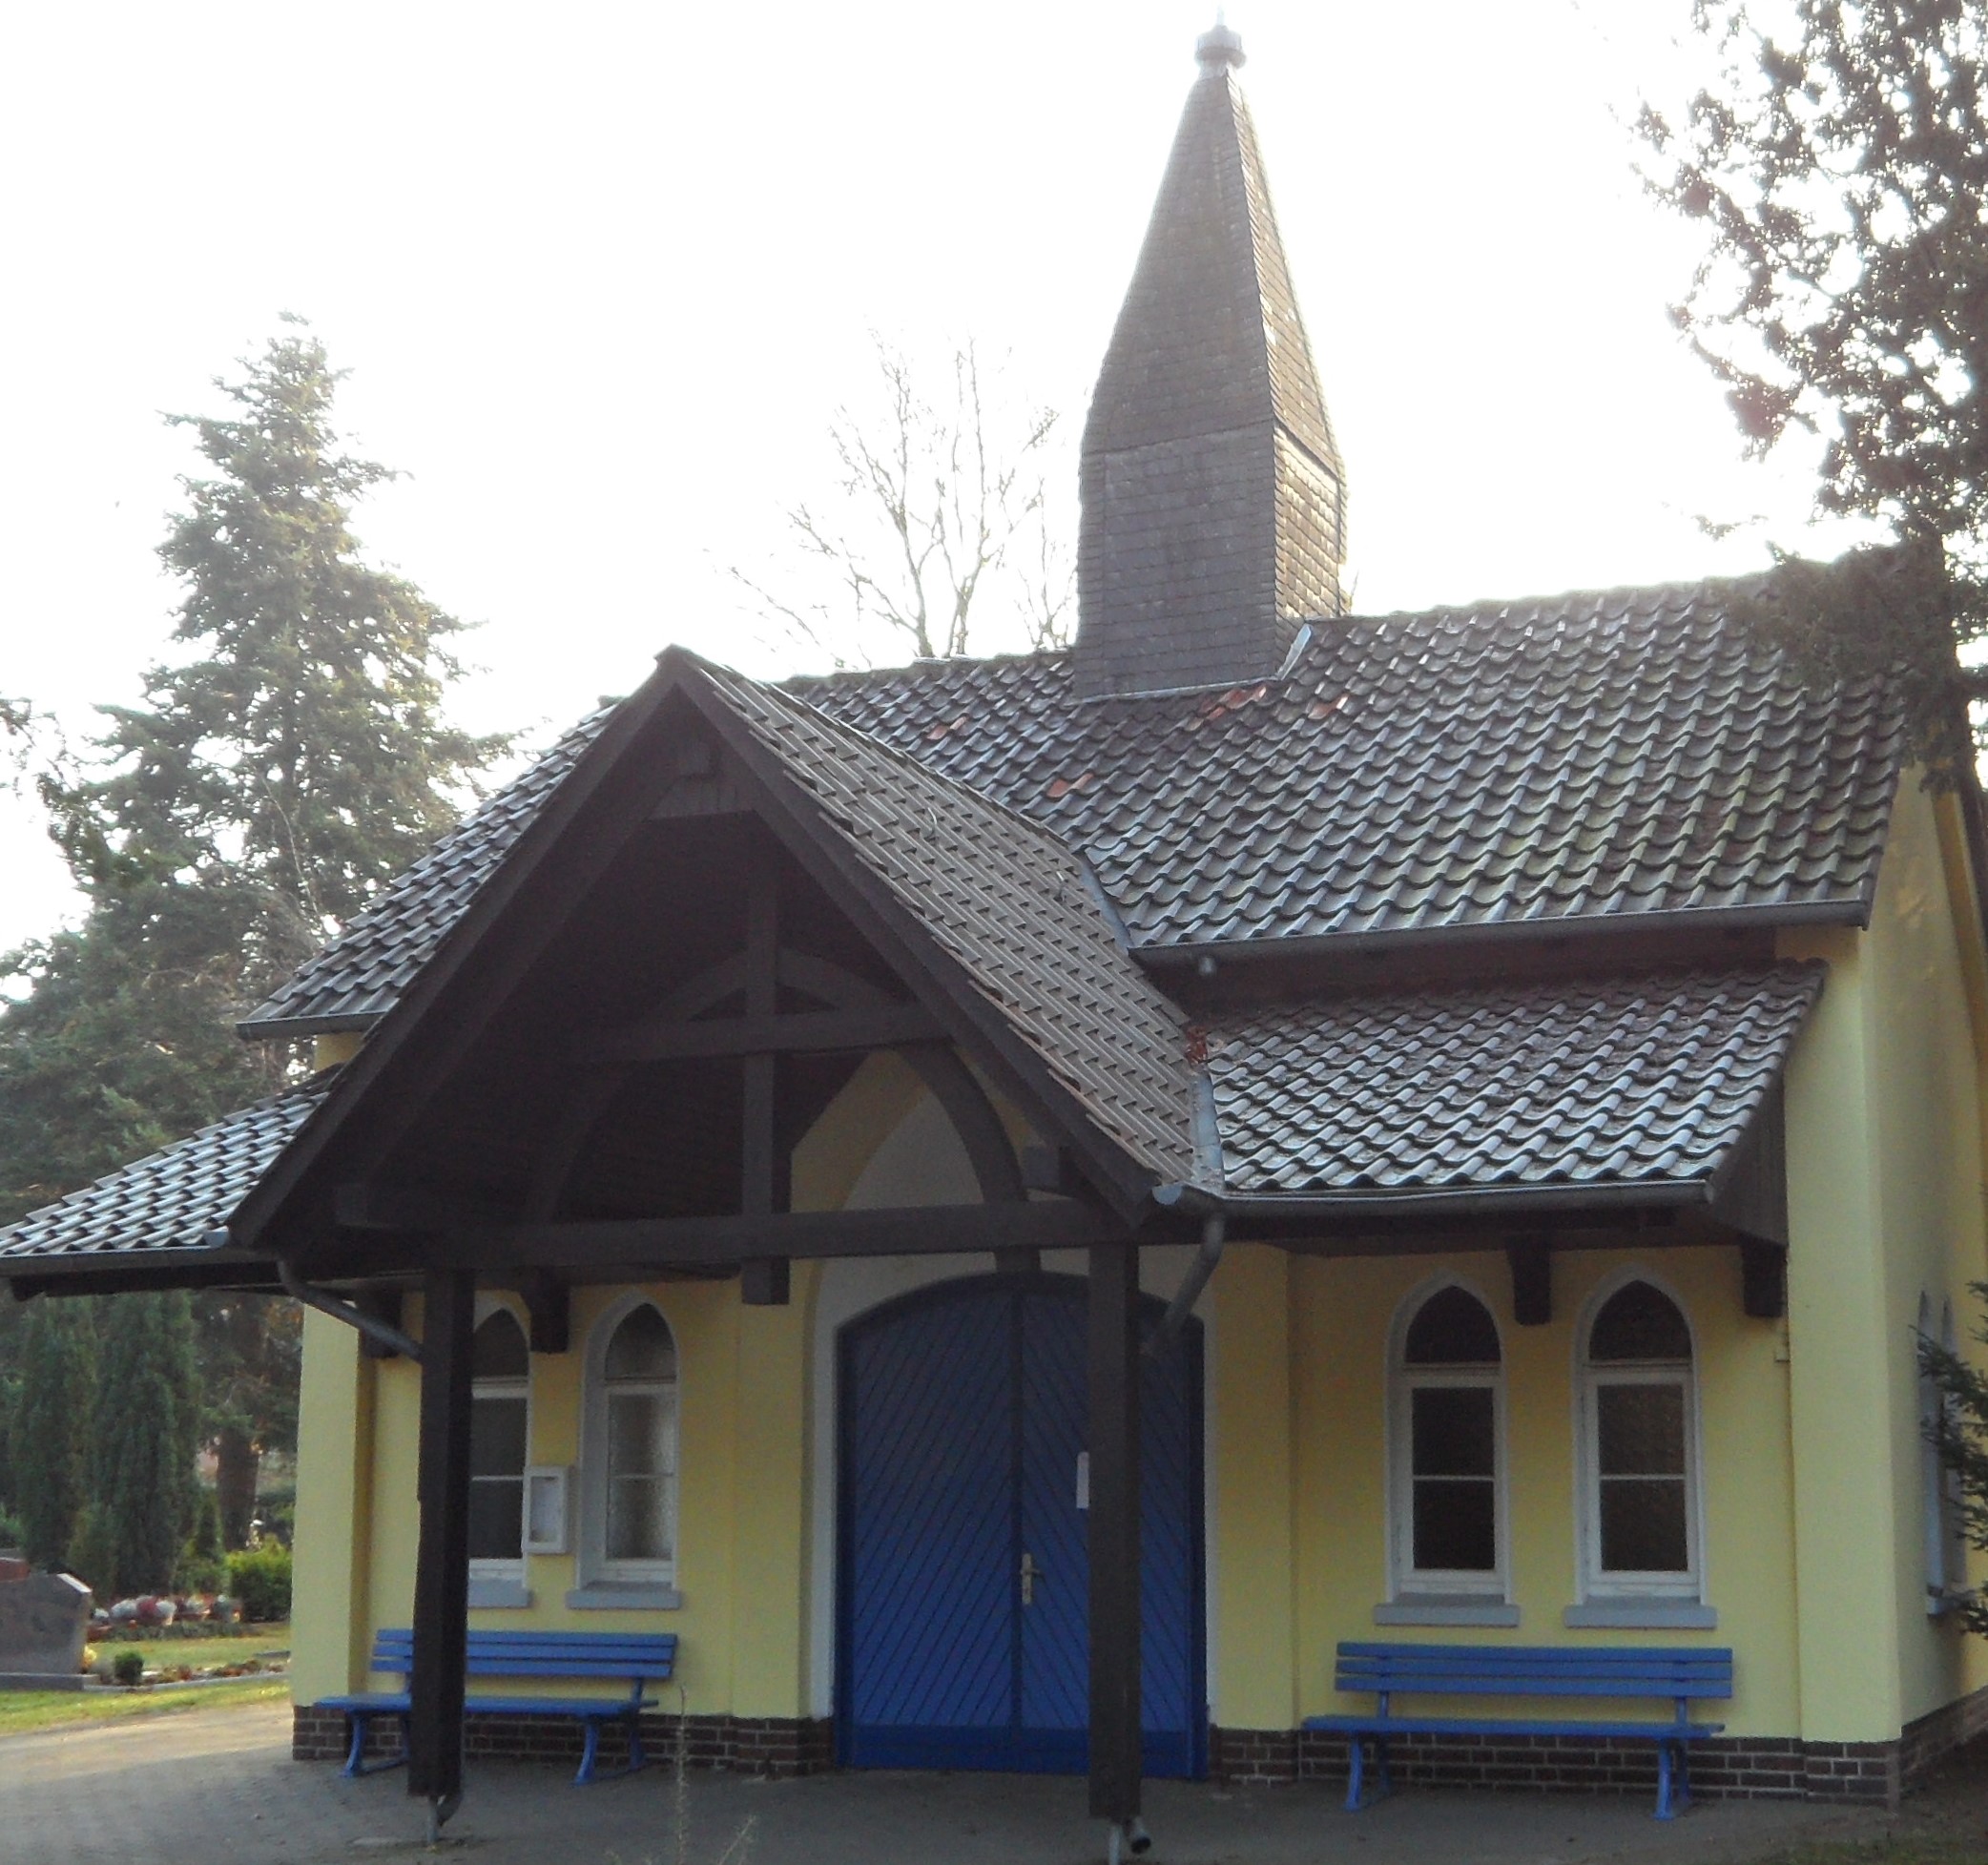 Friedhofskapelle mit spitzem Türmchen und blauer Eingangstür, im Hintergrund Bäume. ©Stadt Laatzen